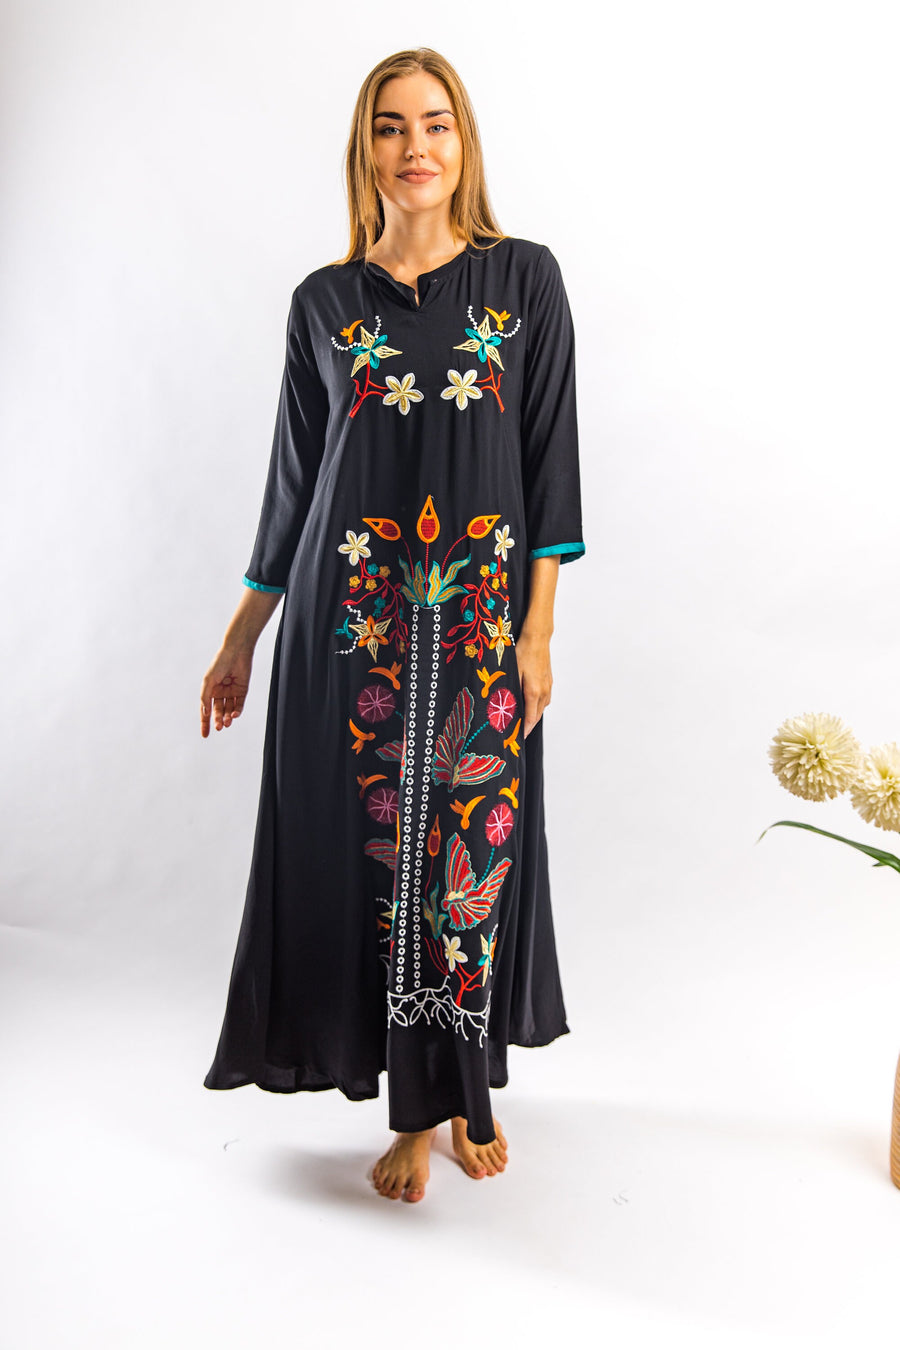 Black vibrant embroidered cotton caftan maxi dress, caftans for women, embroidered Caftan dress, Caftan maxi dress, Caftans for women